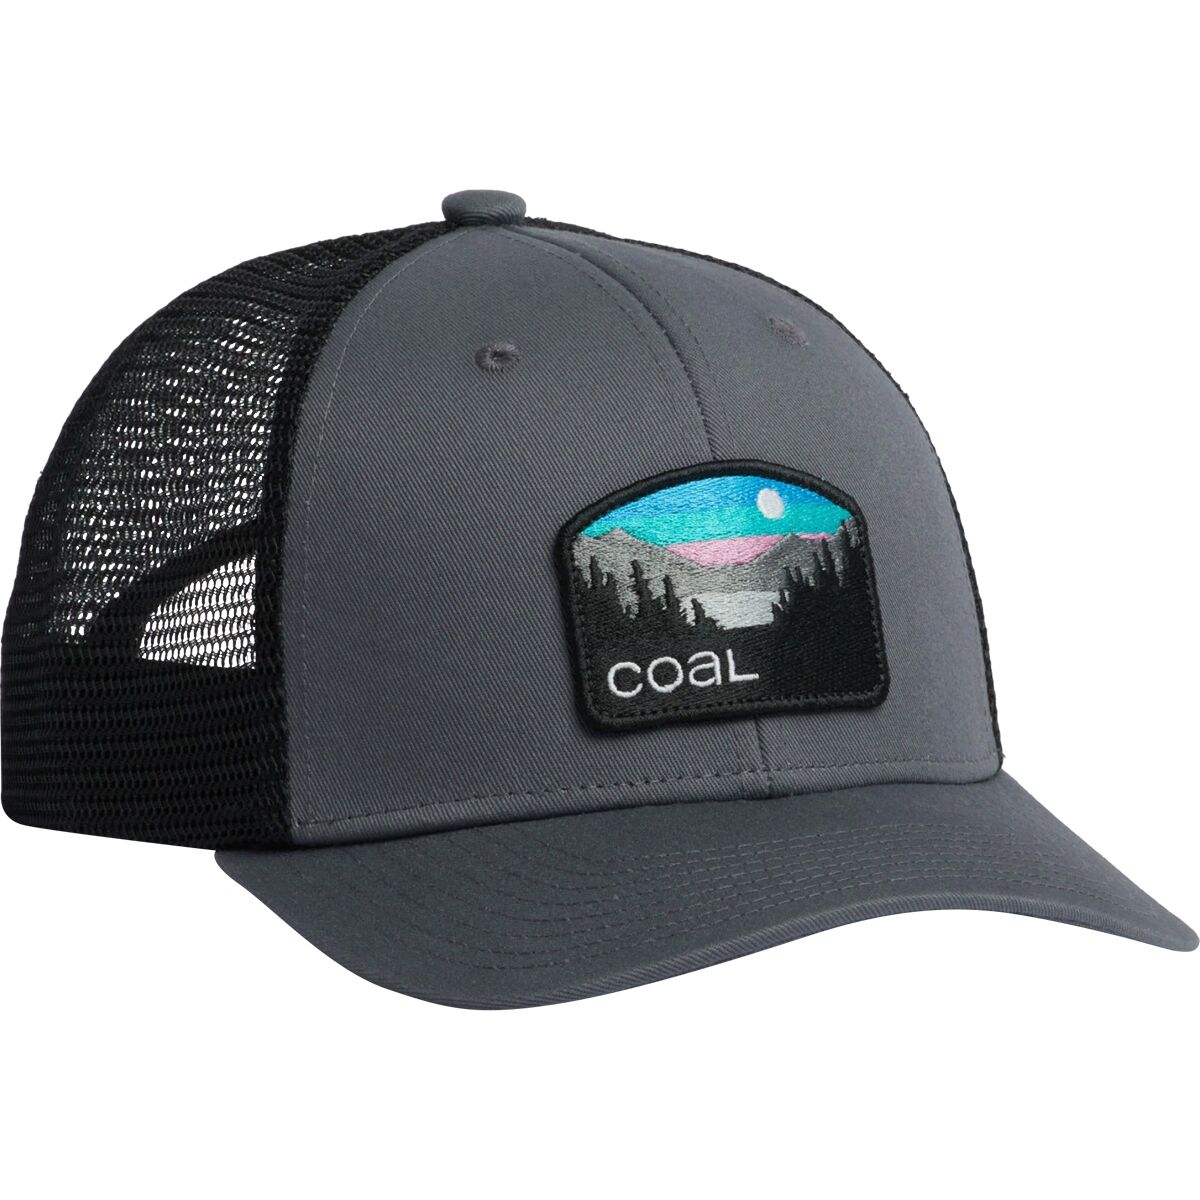 Coal Headwear Hauler Low One Trucker Hat